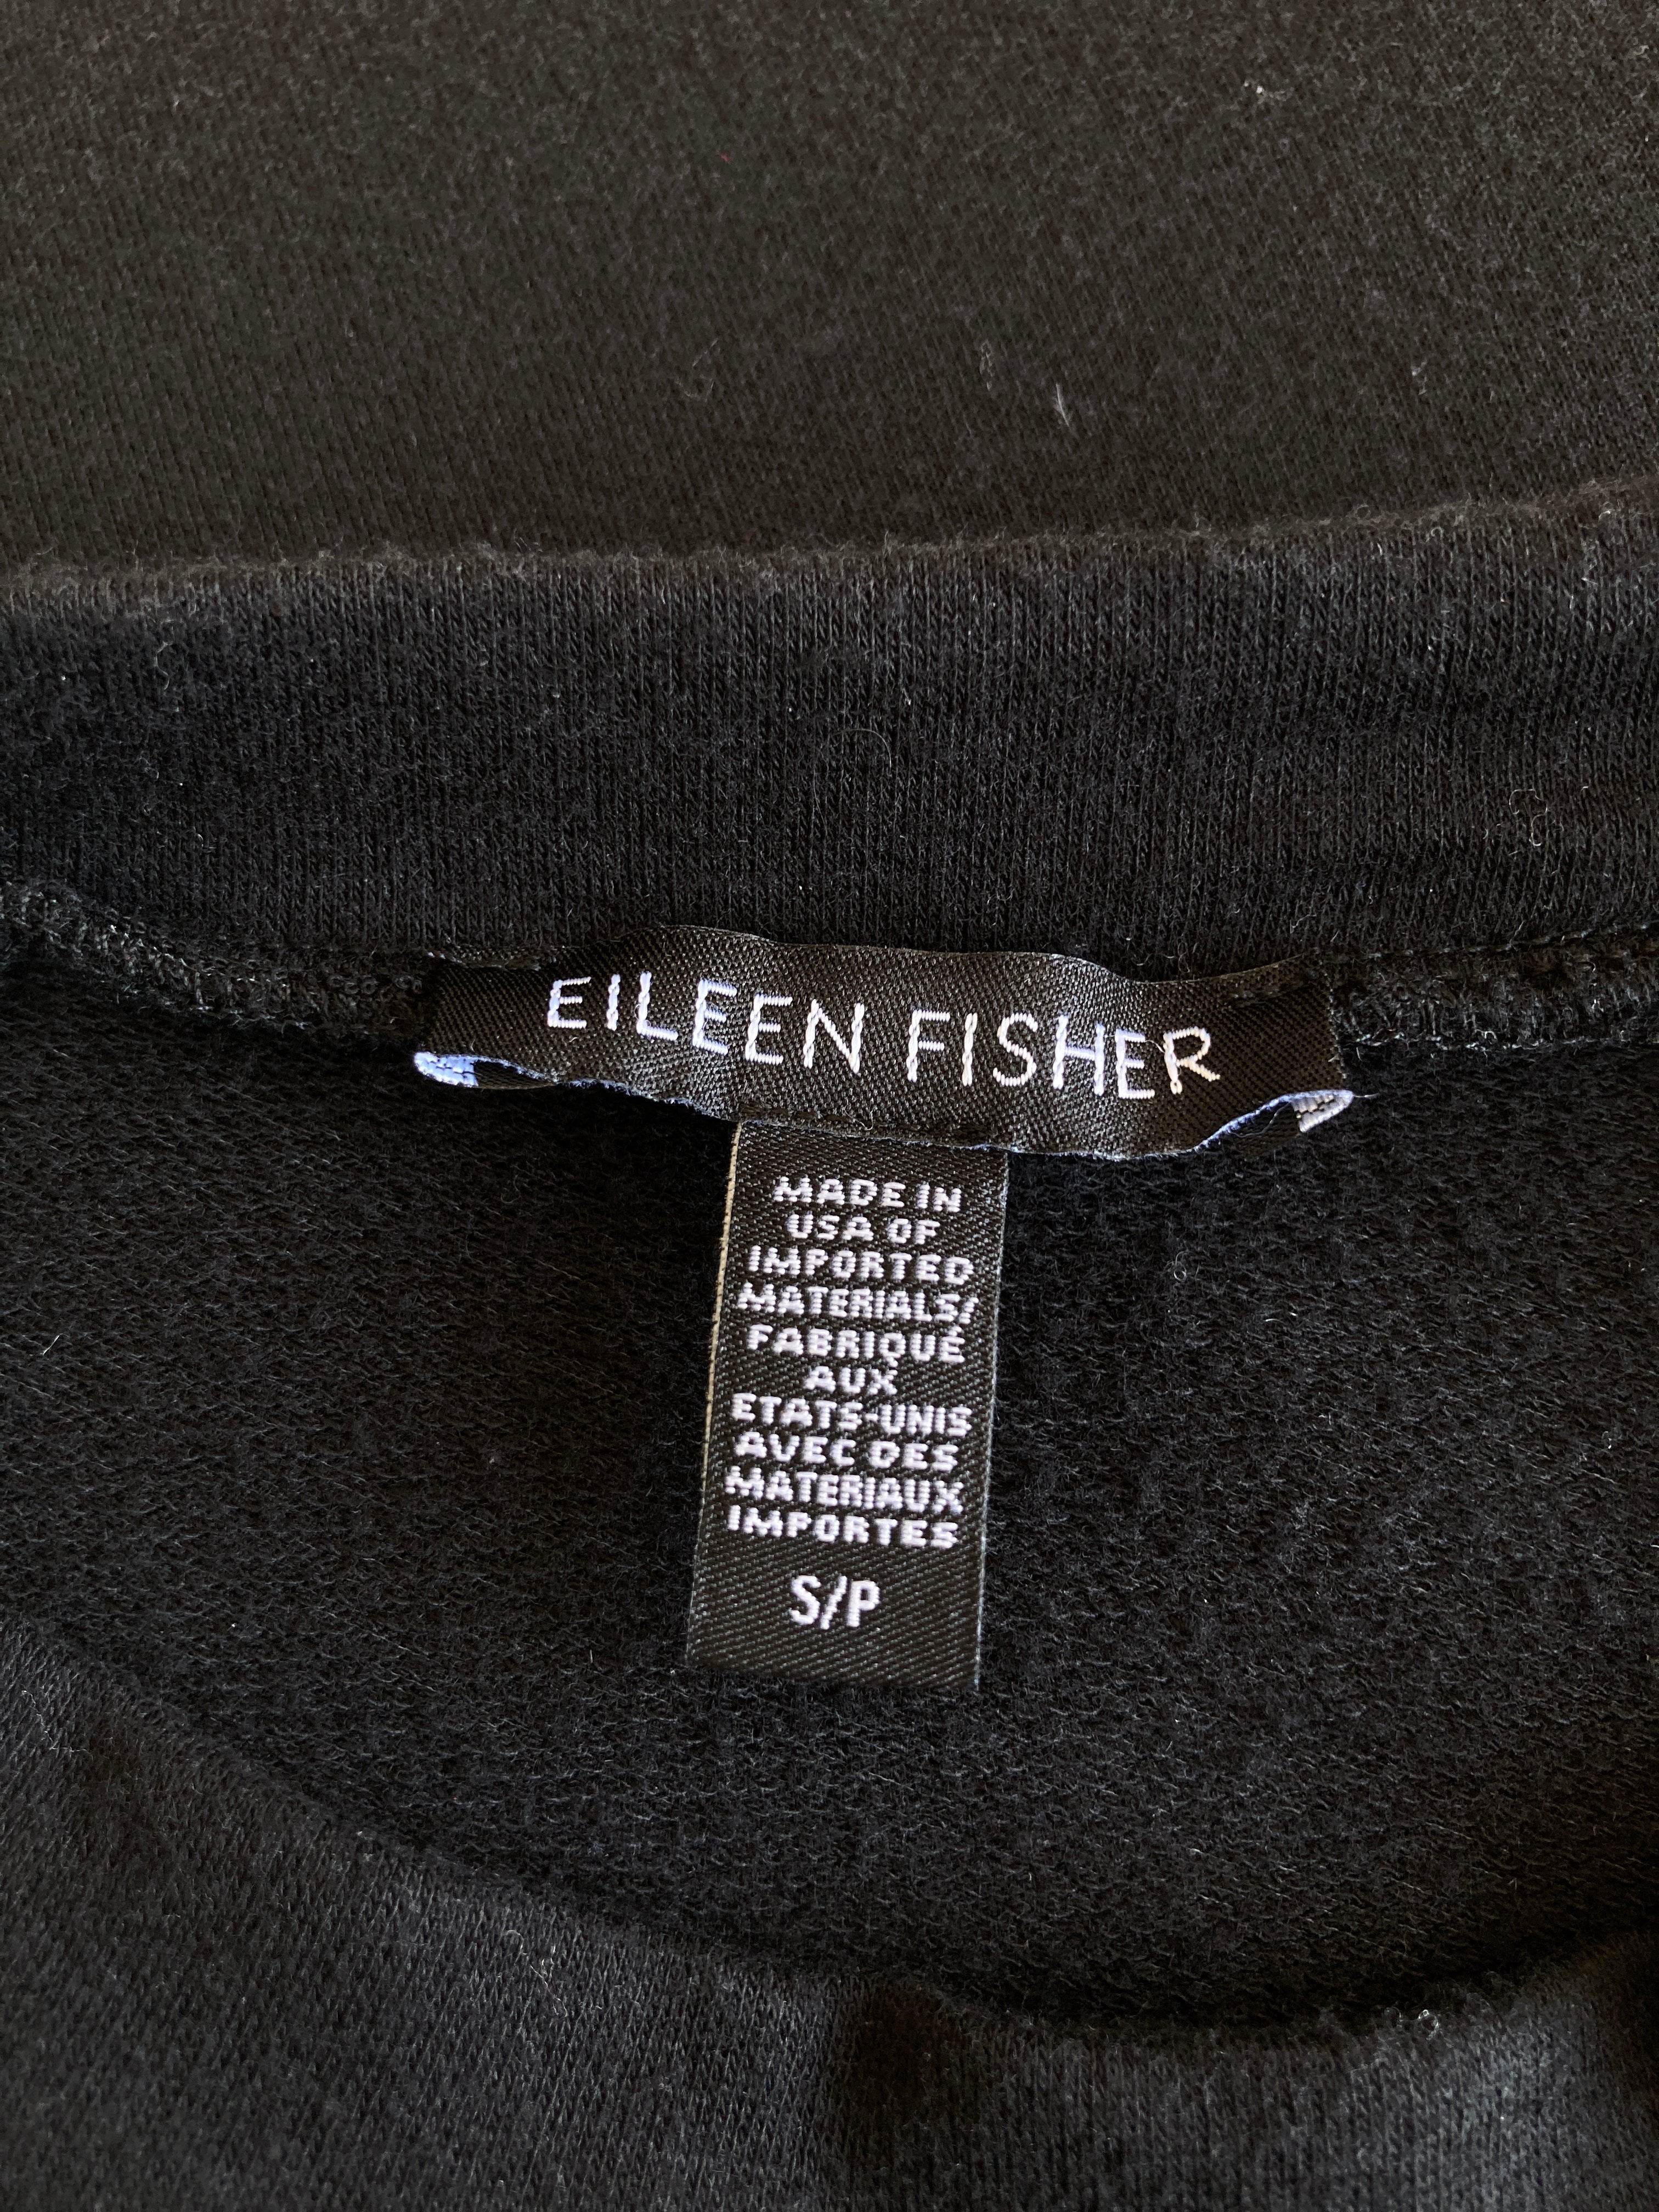 Eileen Fisher Black Skirt, XS